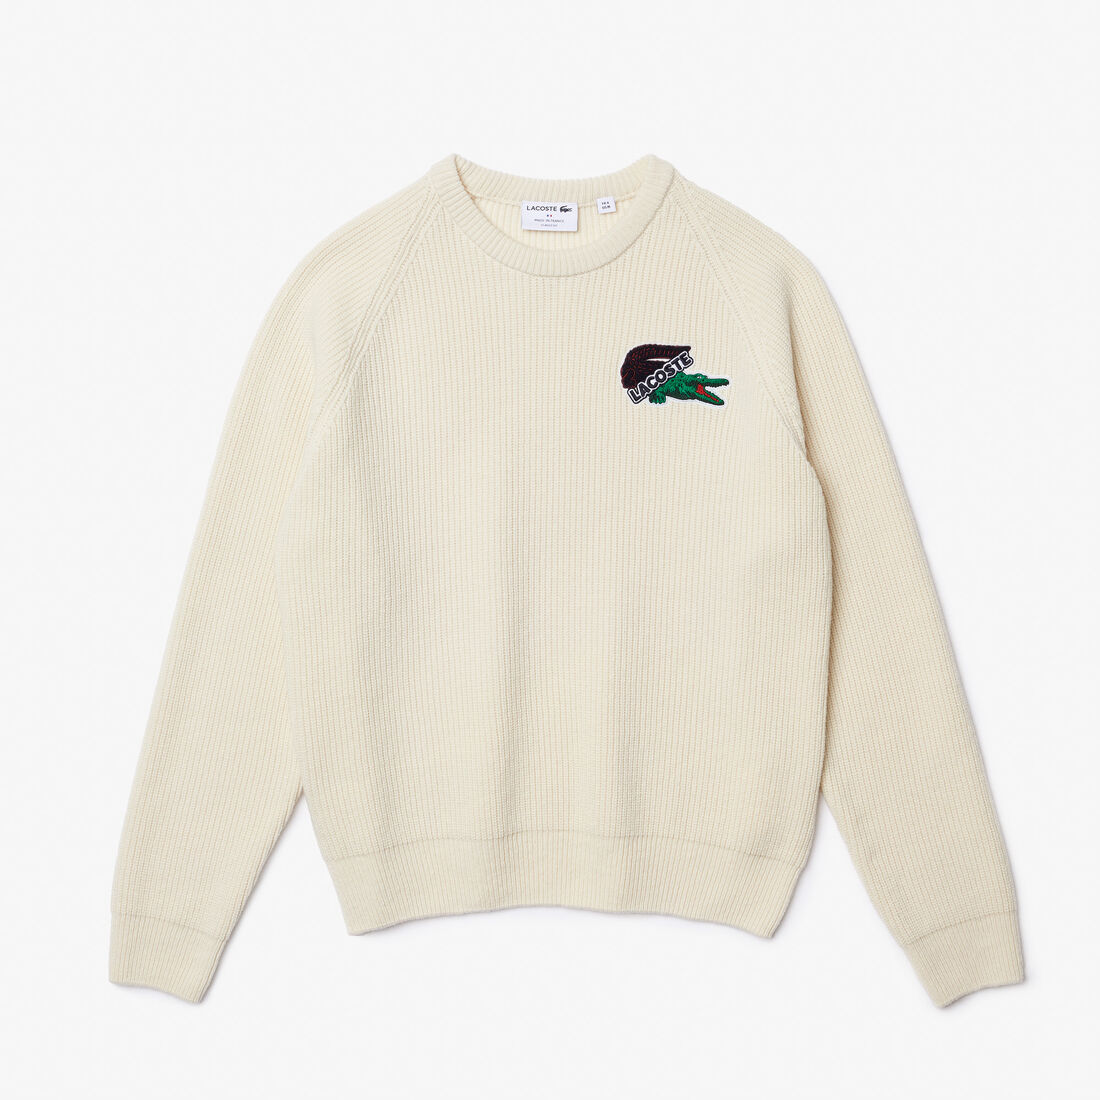 Buy Men's Lacoste Holiday Large Crocodile Sweater | Lacoste UAE